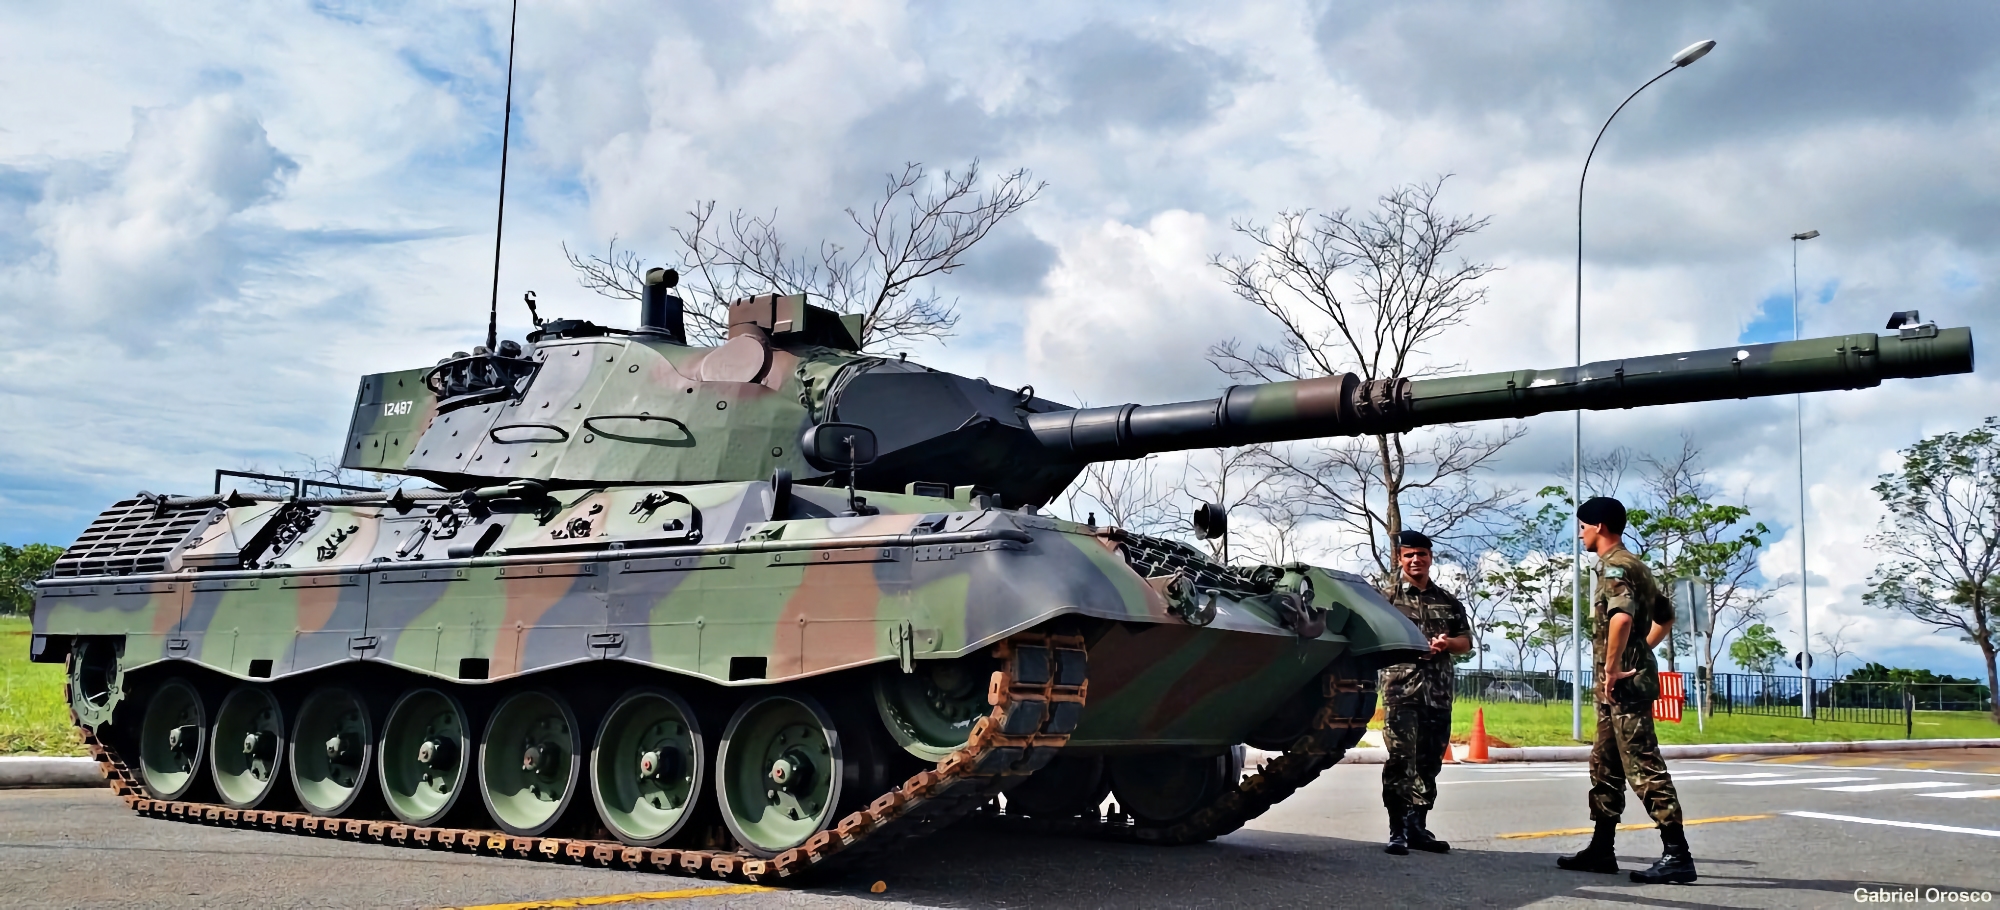 Krauss-Maffei Wegmann rozpoczyna przygotowania czołgów Leopard 1A5 dla Sił Zbrojnych Ukrainy